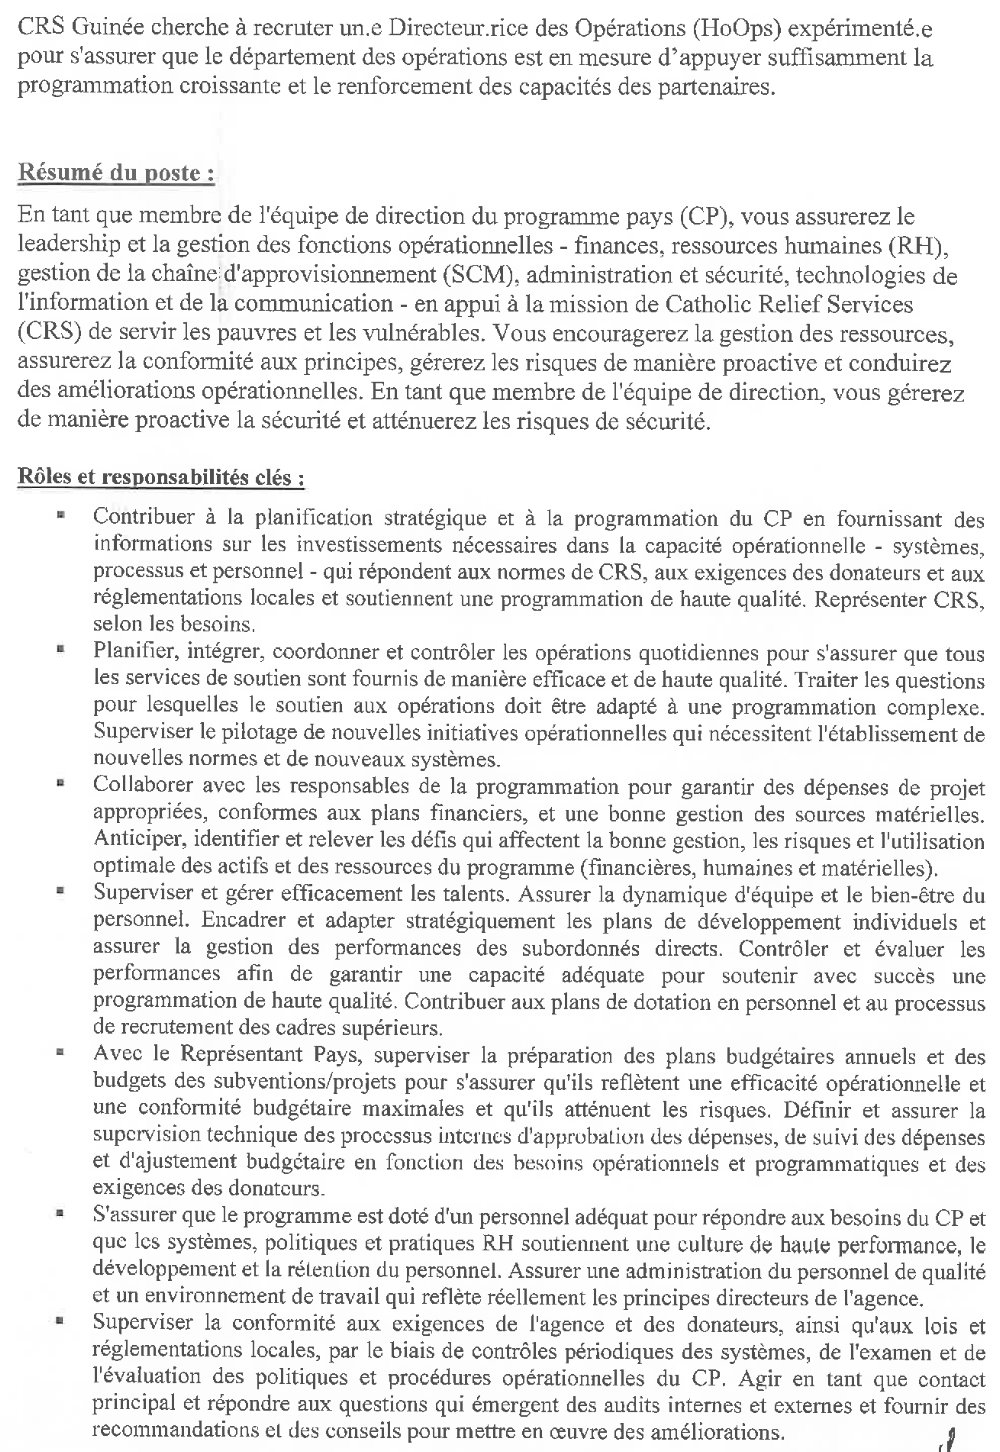 Appel à candidature pour le recrutement d’un(e) Directeur (trice) des Opérations pour CRS Guinée page 2 